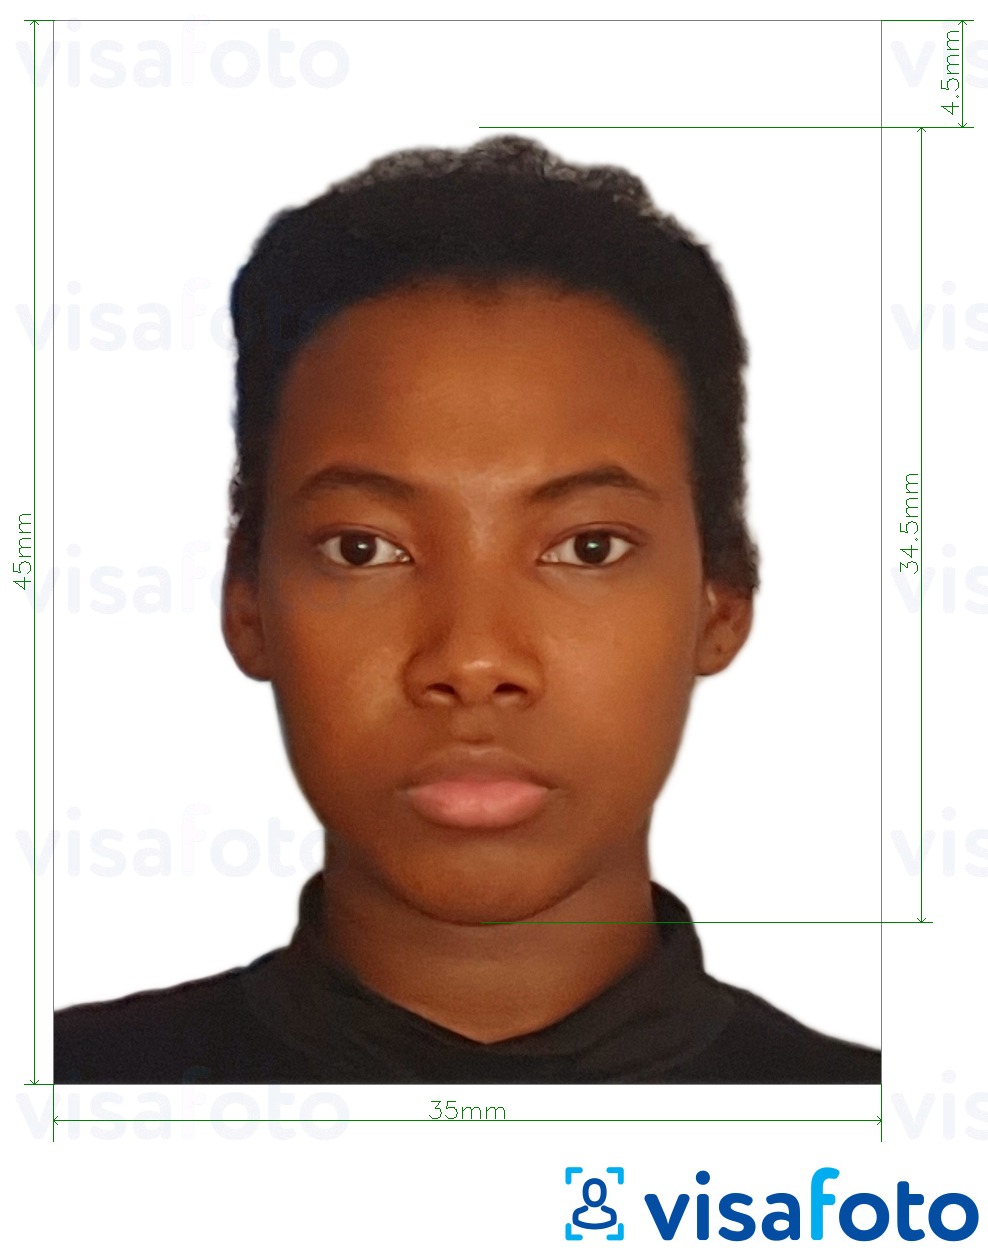 Fotobeispiel für Kenia ID-Karte 35x45 mm mit genauer größenangabe